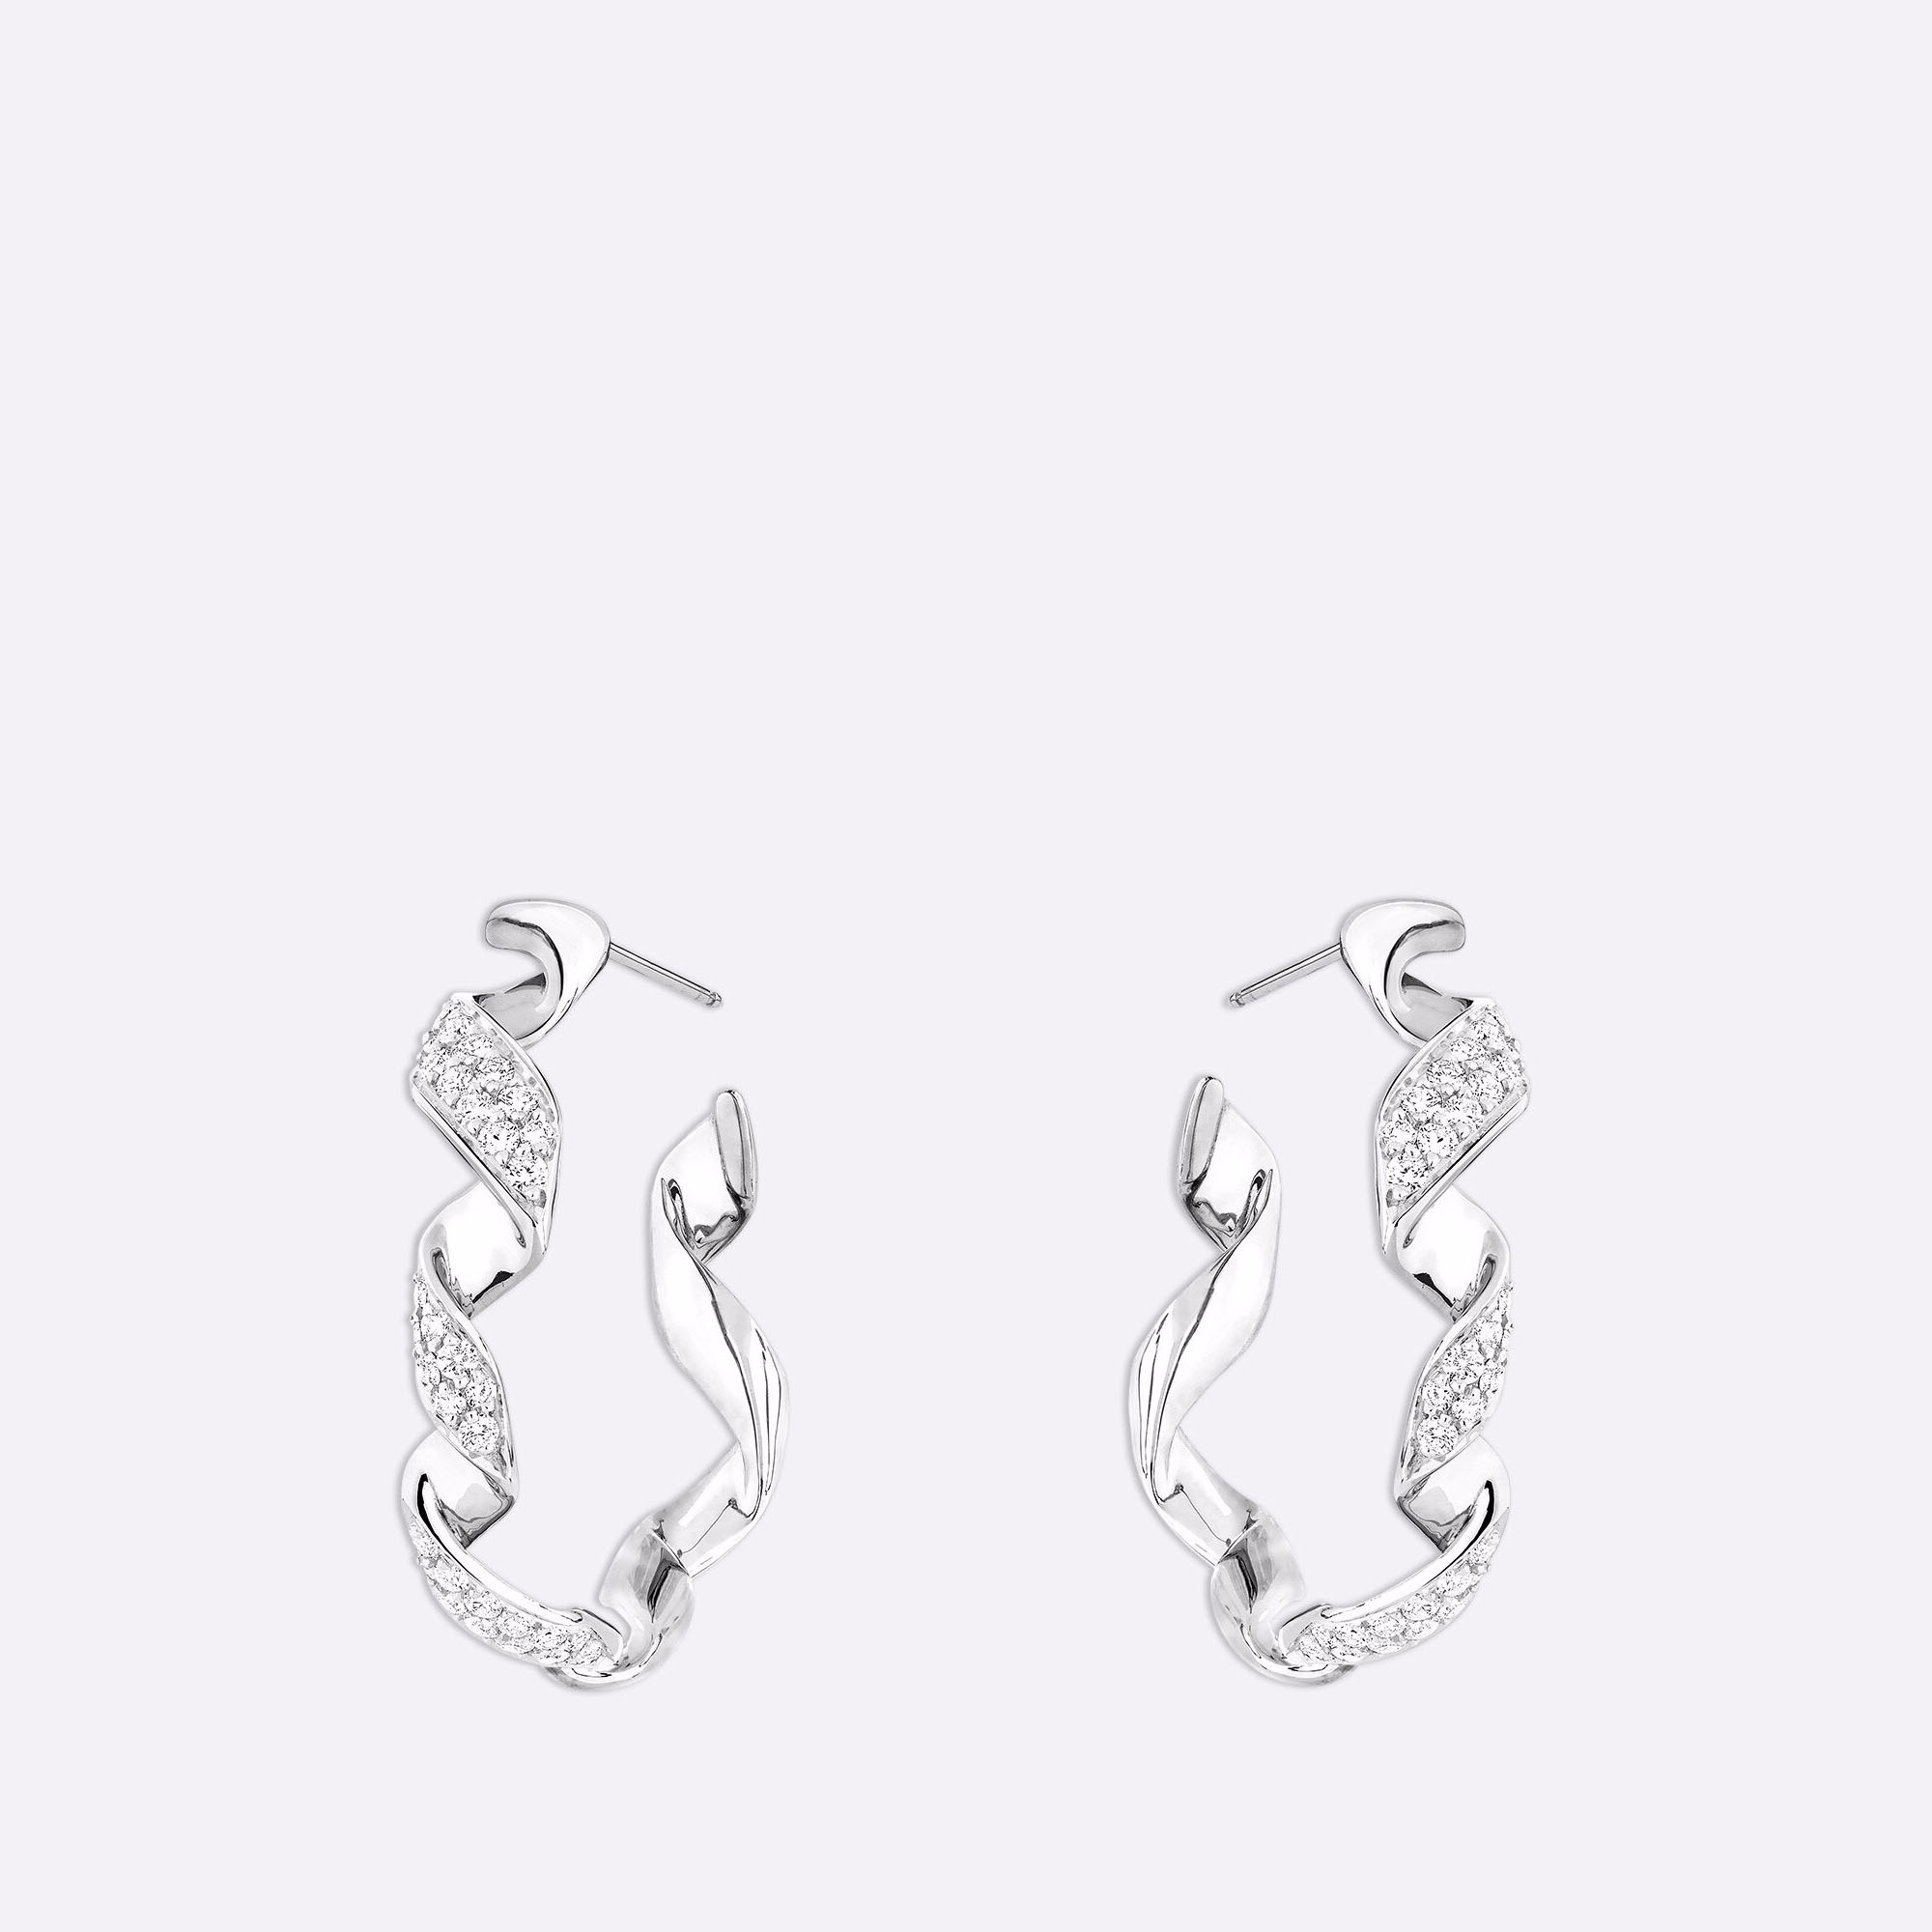 OEM/ODM smykker Specialdesignede øreringe i 18 karat hvidguld smykker Leverandører Producenter